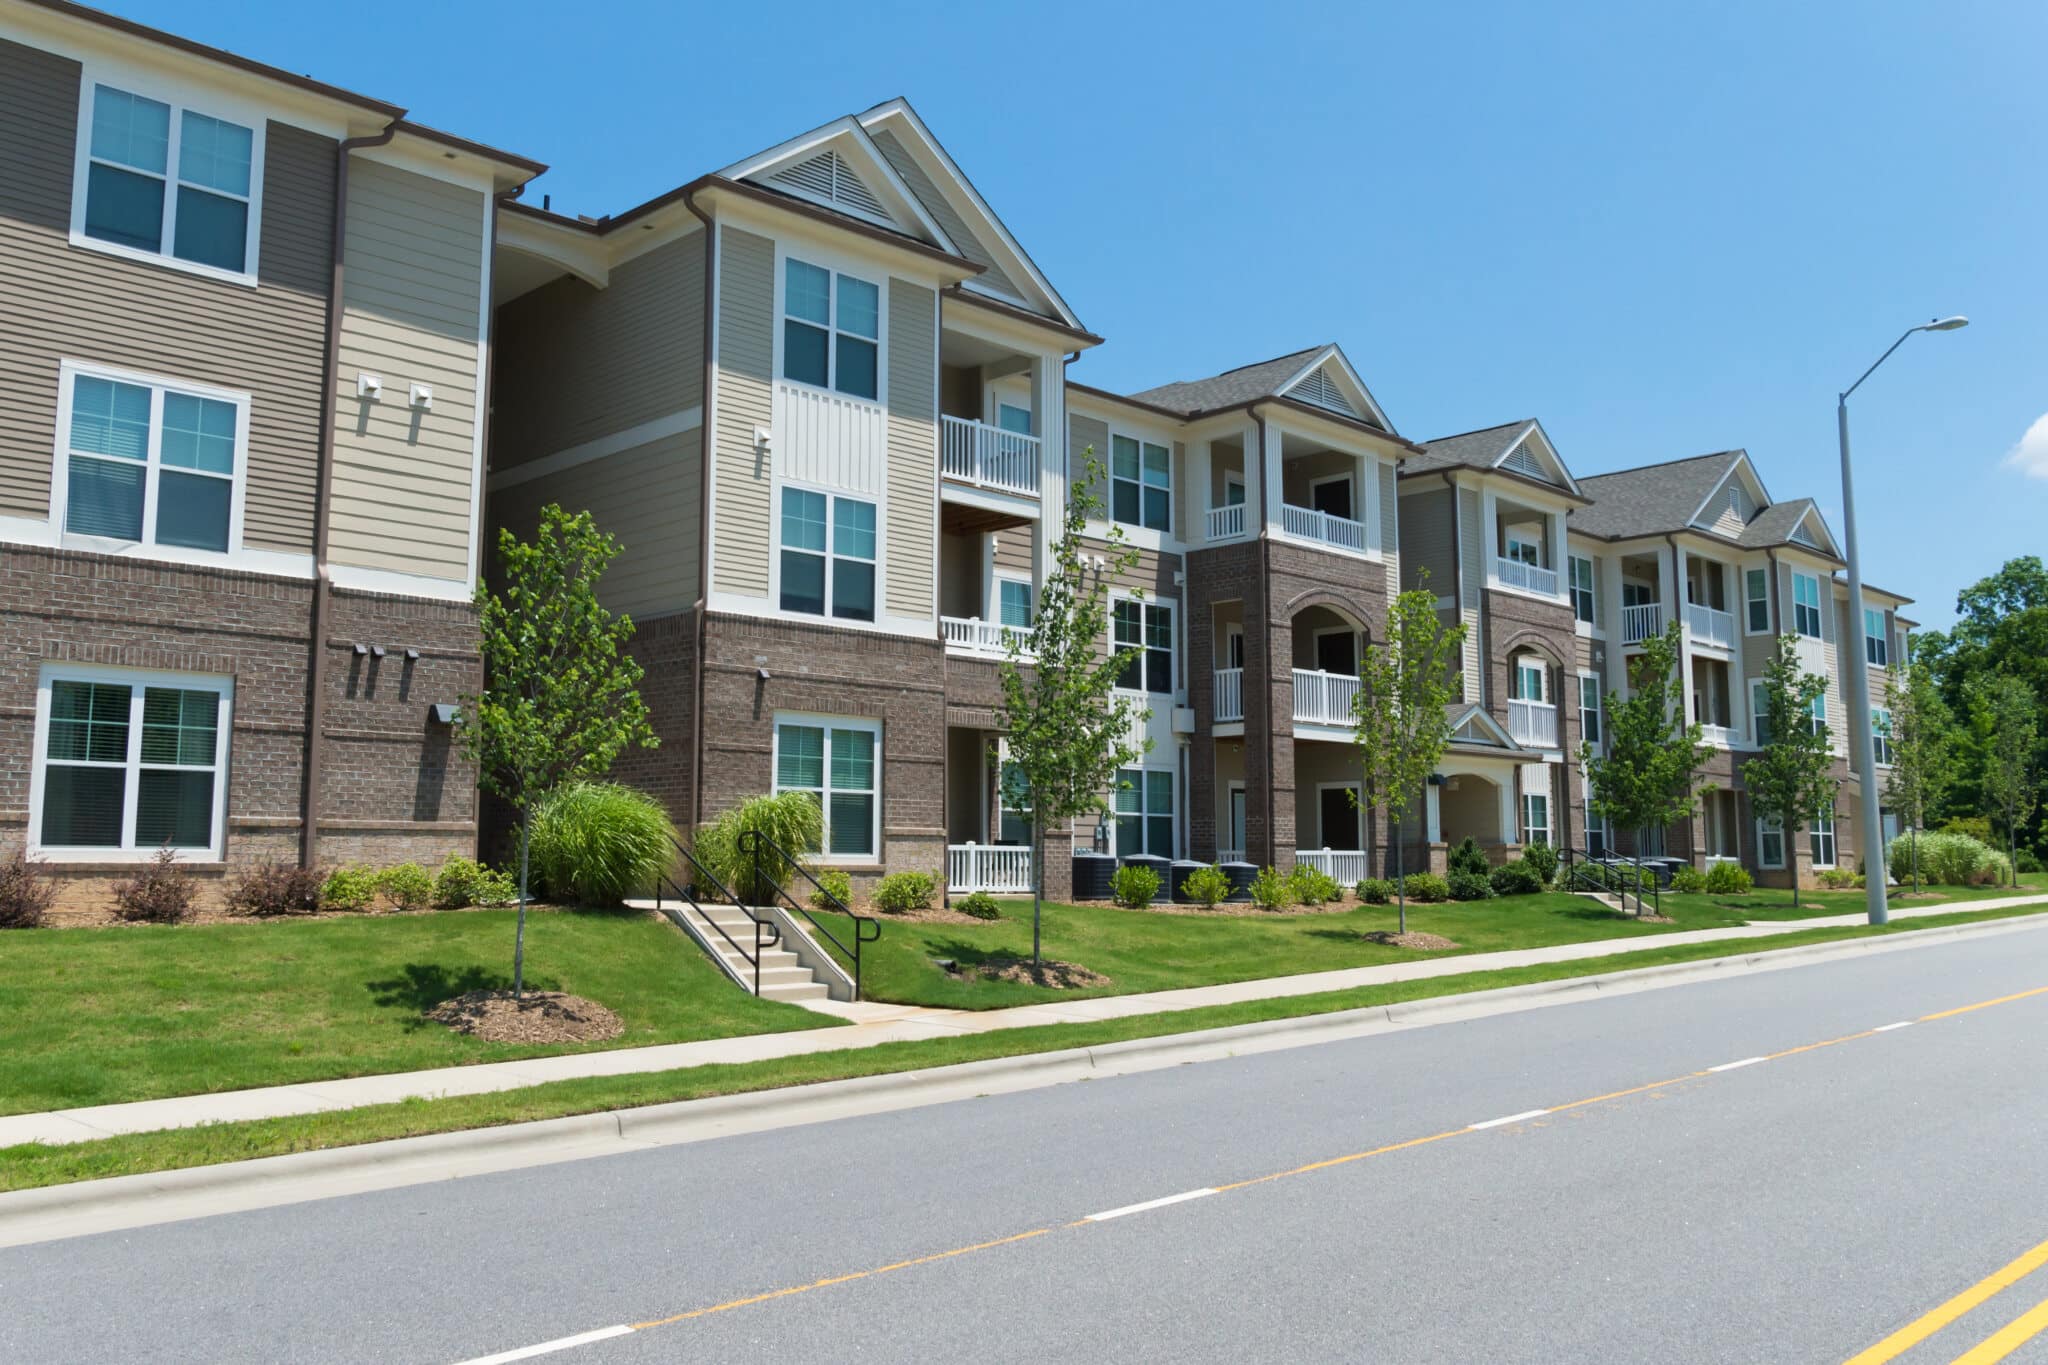 לידיעת המשקיעים: איפה תוכלו לרכוש דירה בארה”ב בפחות מ-200 אלף דולר?